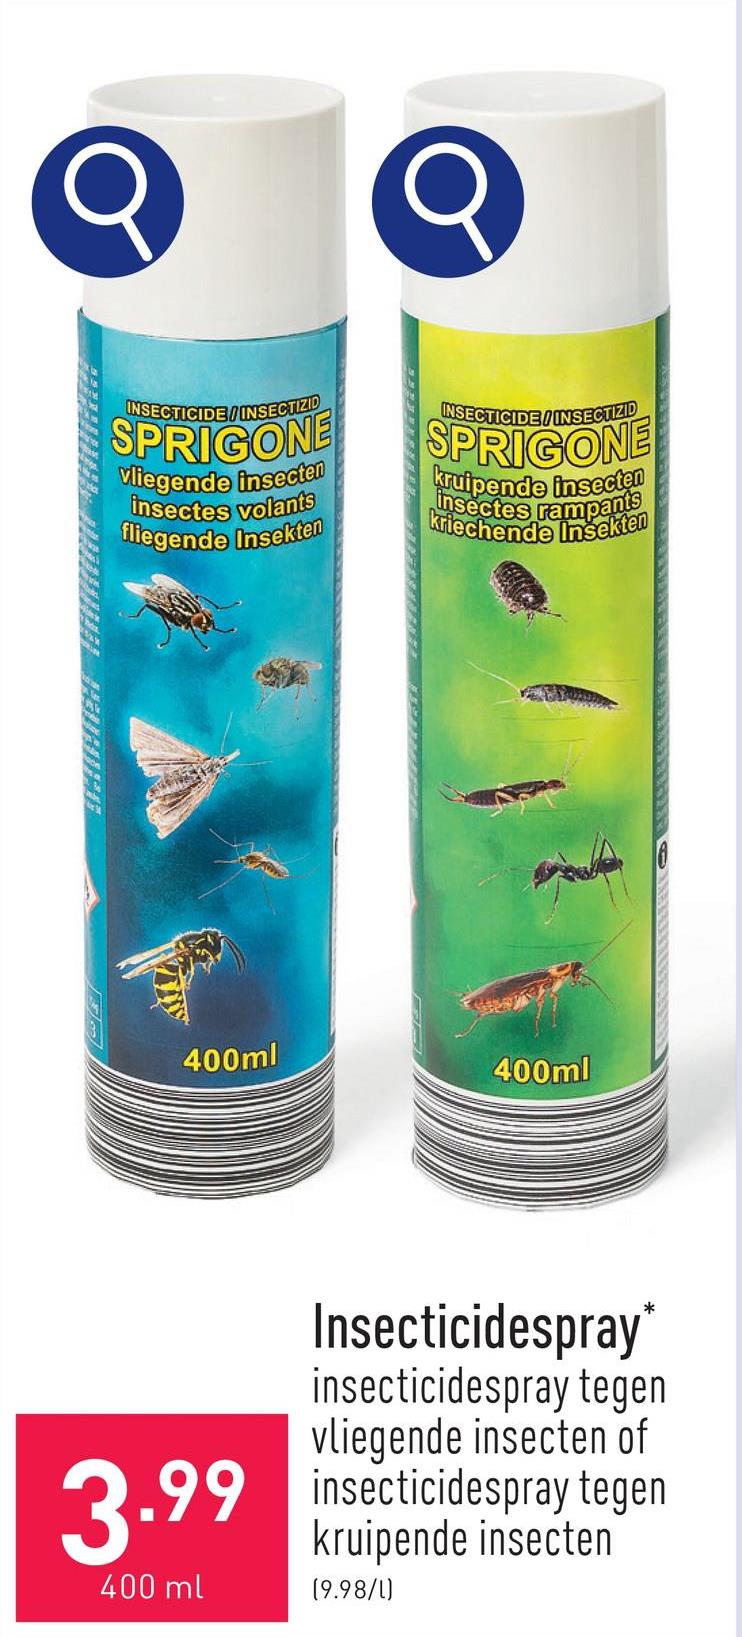 Insecticidespray tegen vliegende insecten bestrijdt vliegen, muggen, wespen, motten en ander ongedierte, combineert een zeer snelle aanvangswerking met een lange nawerking, gewaarborgde samenstelling: permethrine (CAS 52645-53-1) 0,3 %, tetramethrine (CAS 7696-12-0) 0,2 %, toelatingsnummer: BE-REG-00330*